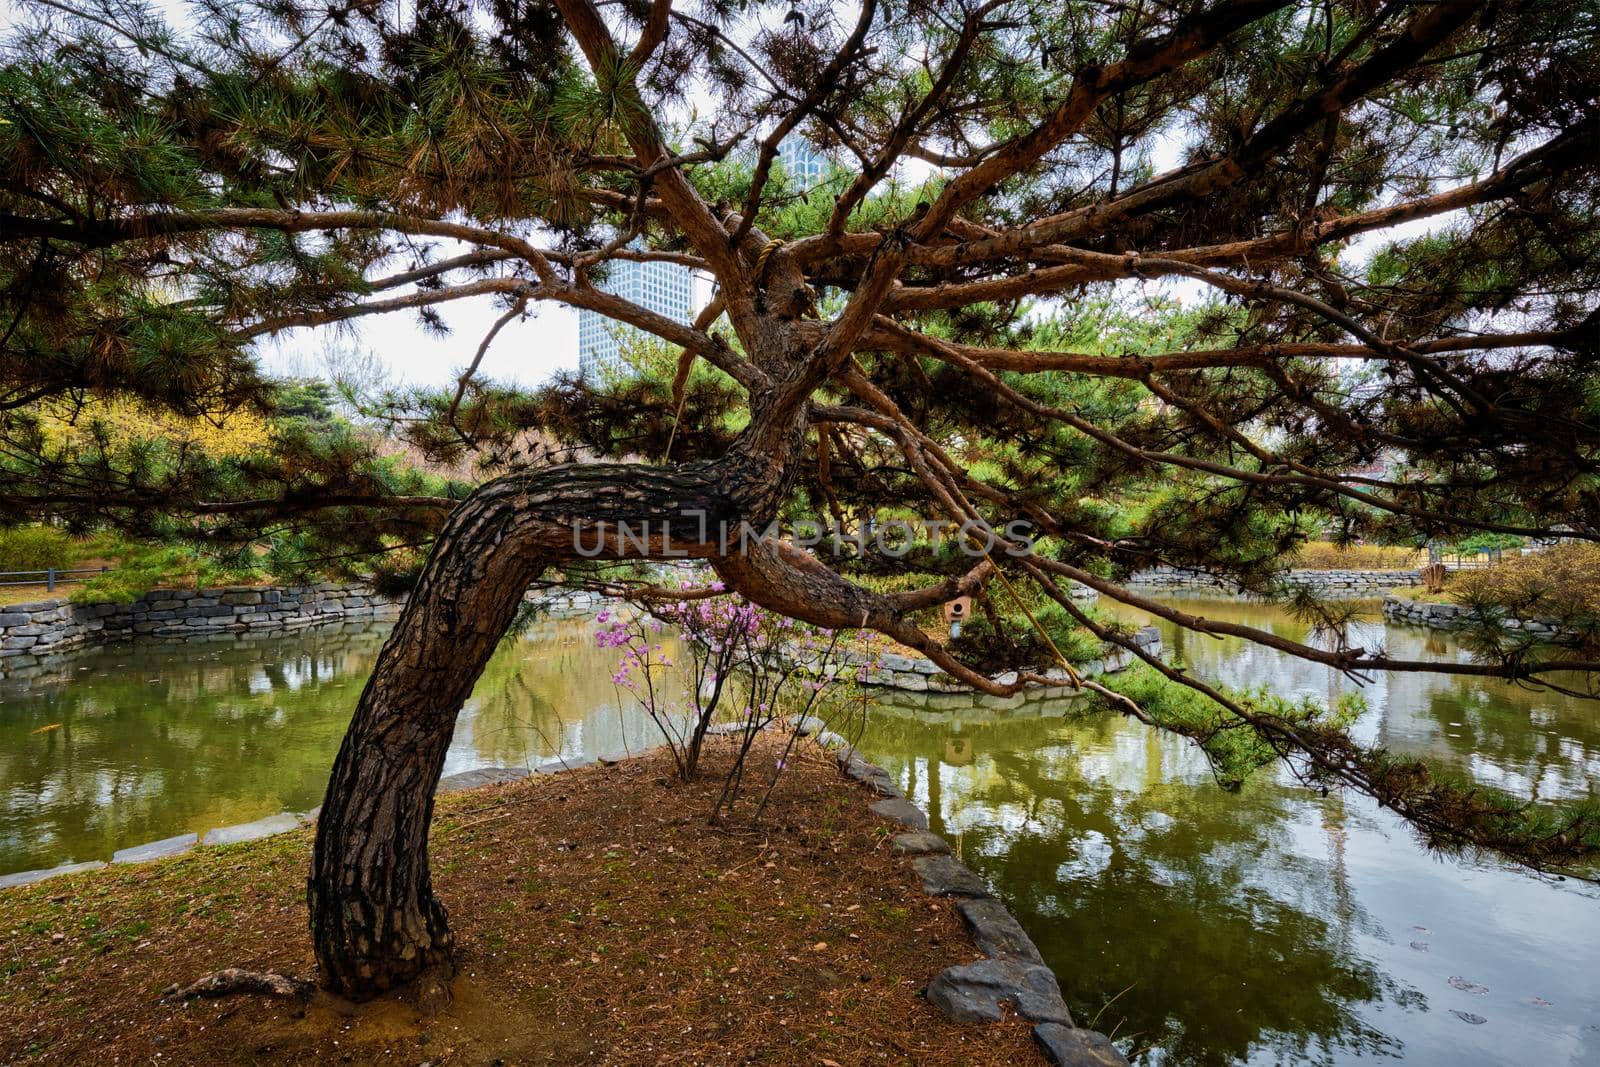 Pine tree in Yeouido Park public park in Seoul, Korea